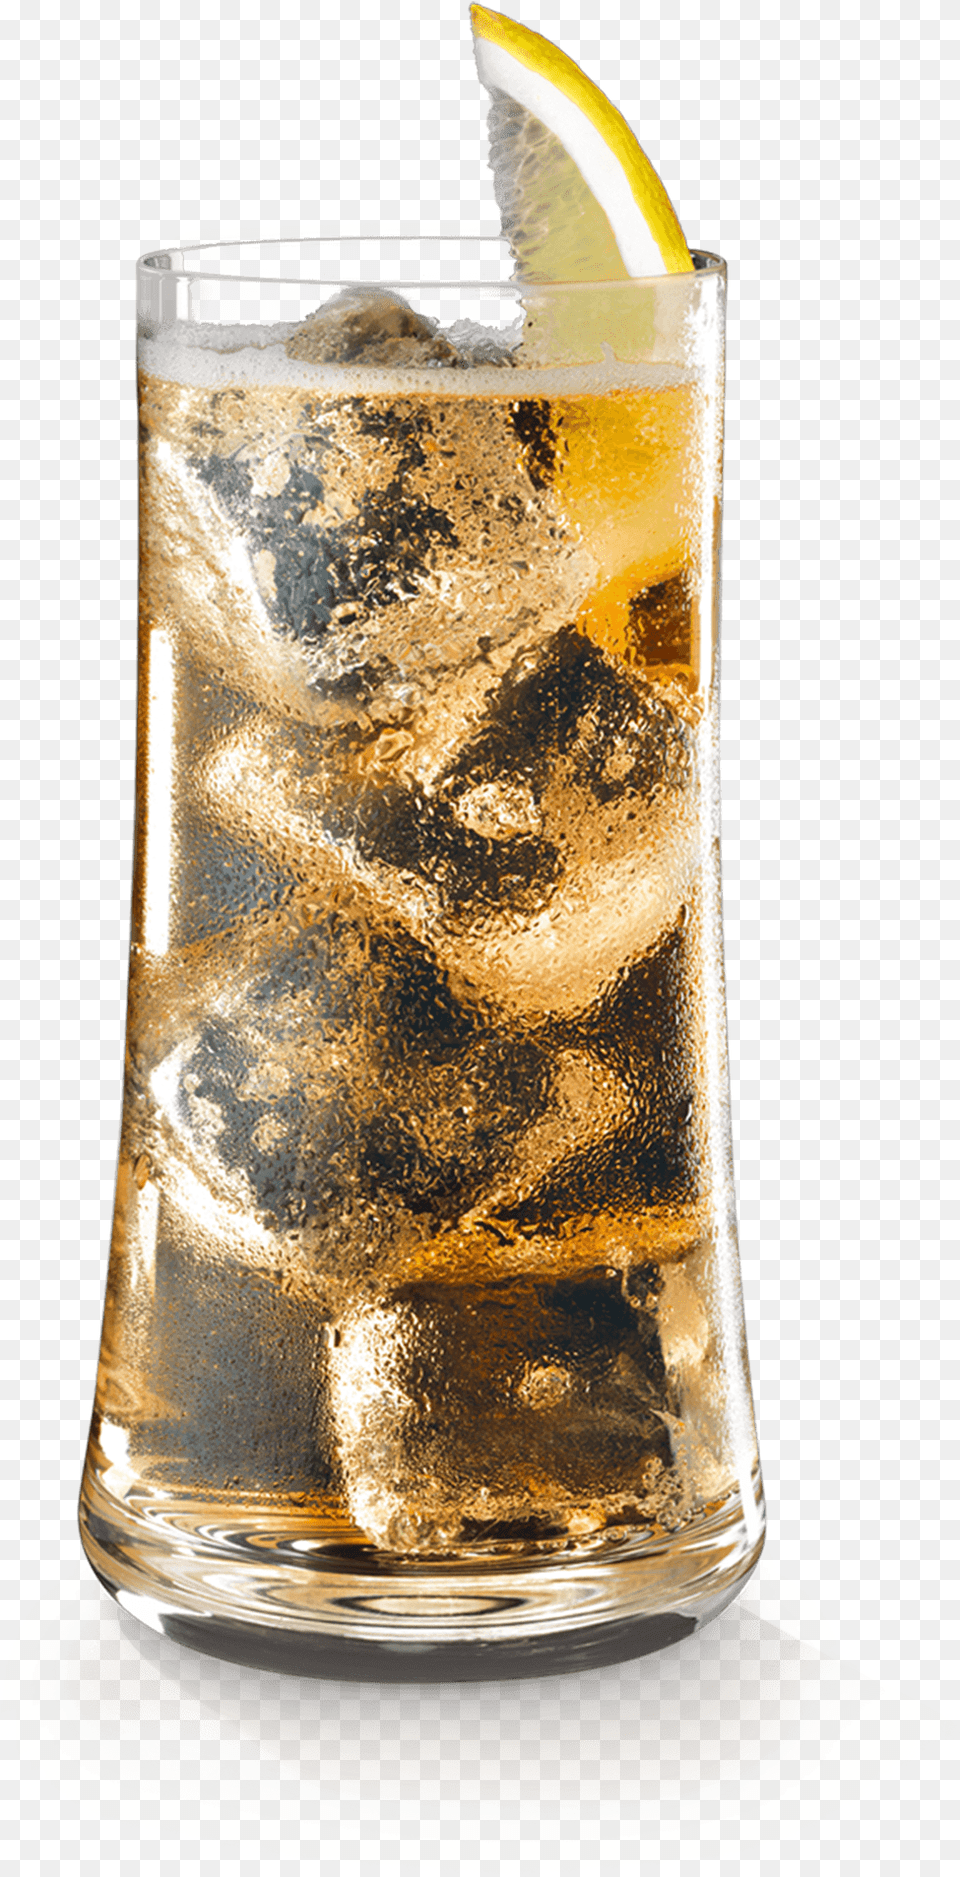 Soft Drink, Glass, Alcohol, Beer, Beverage Png Image